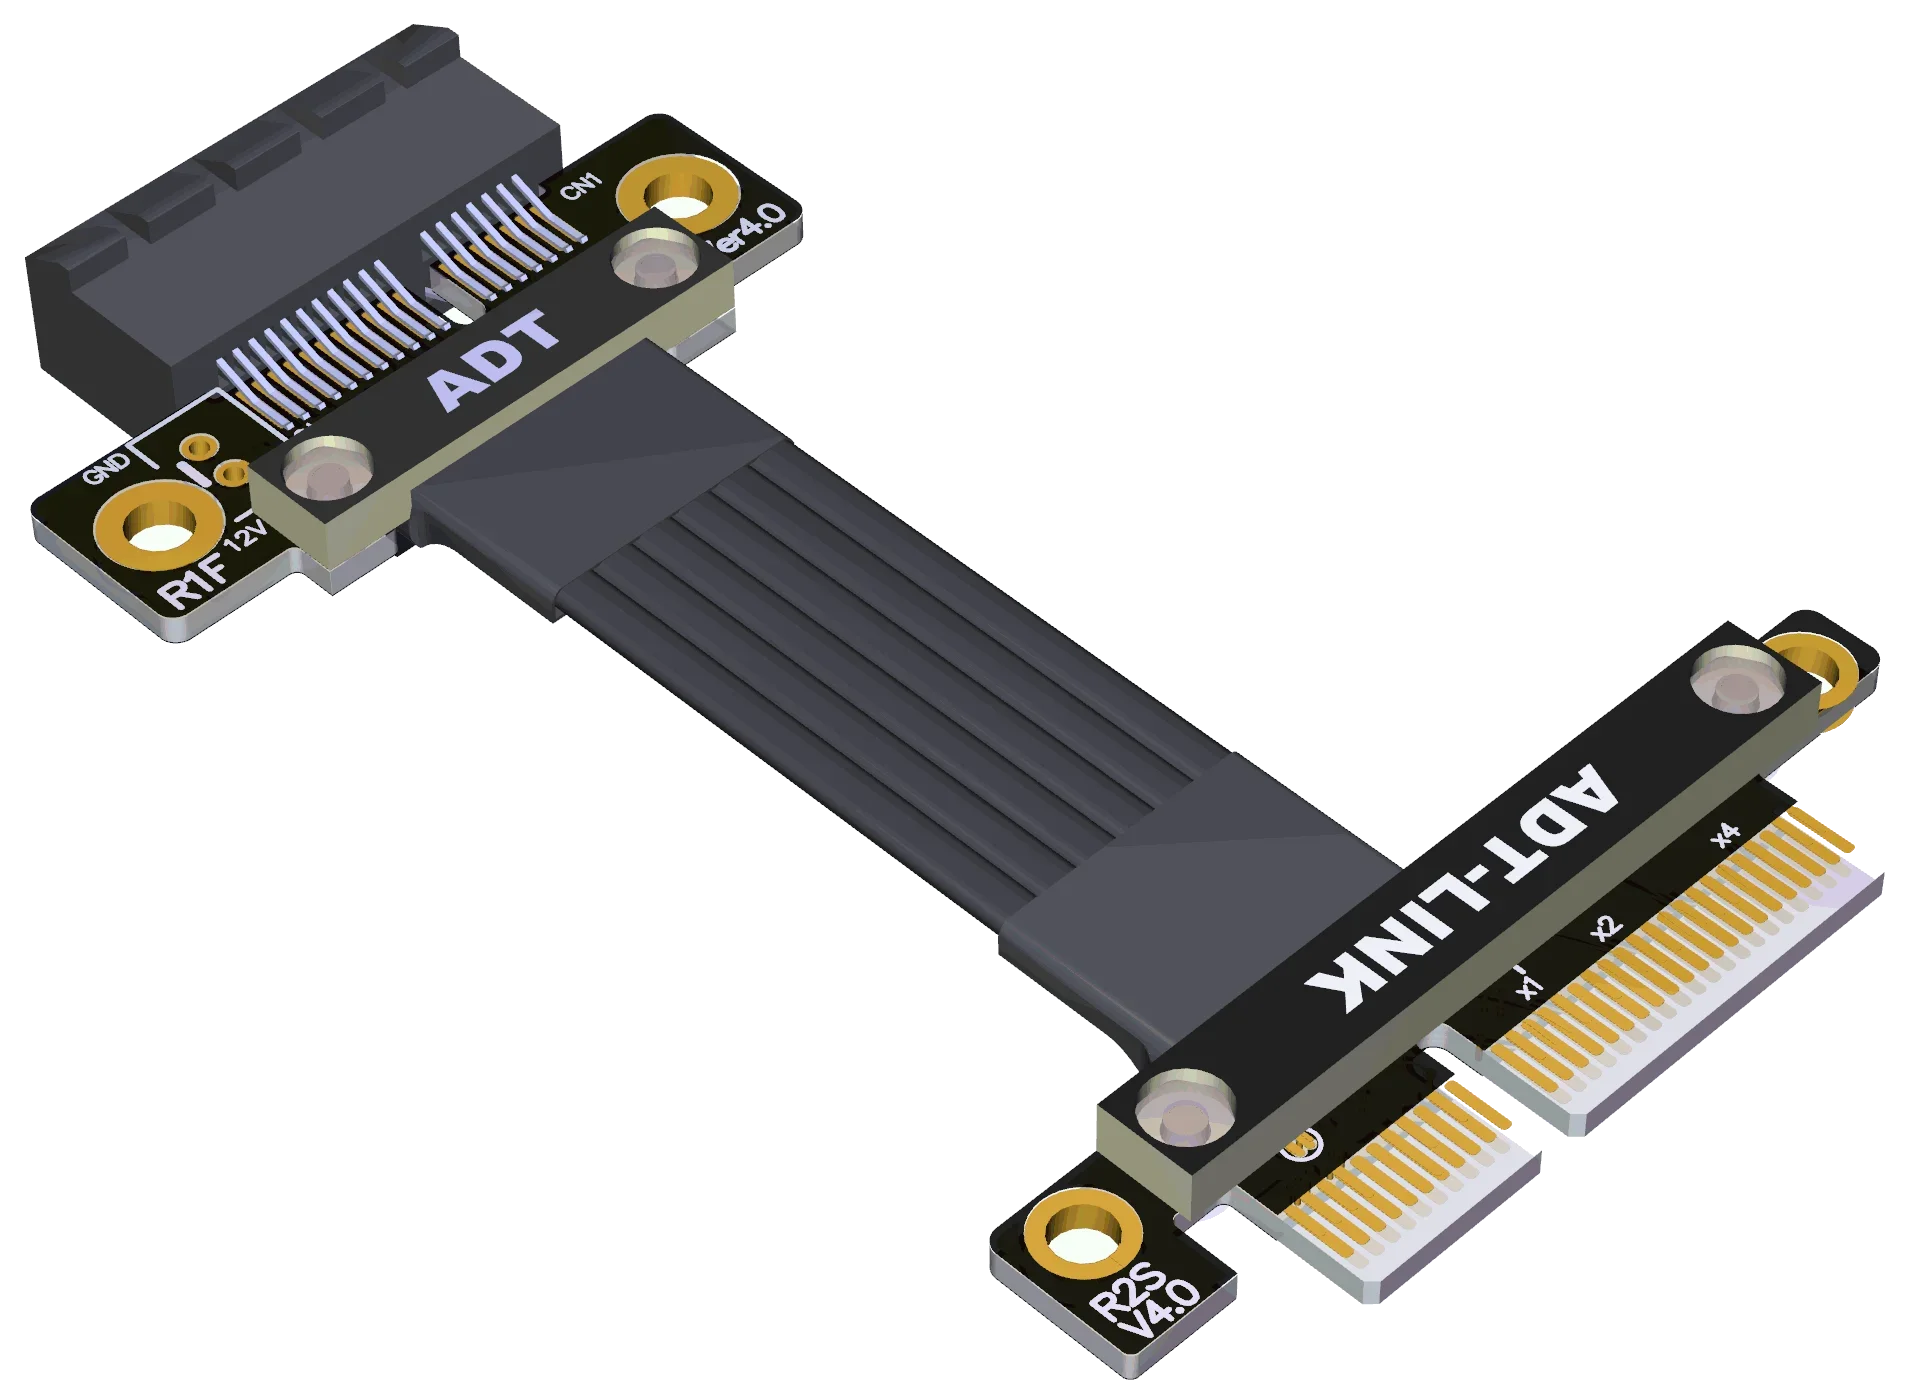 Riser PCI-E 3.0 X4-X1 PCIe Удлинительный Кабель-Перемычка PCI Express 4.0 1x 4x для Карты захвата Гигабитной Беспроводной Локальной сети, Аудиокарты USB